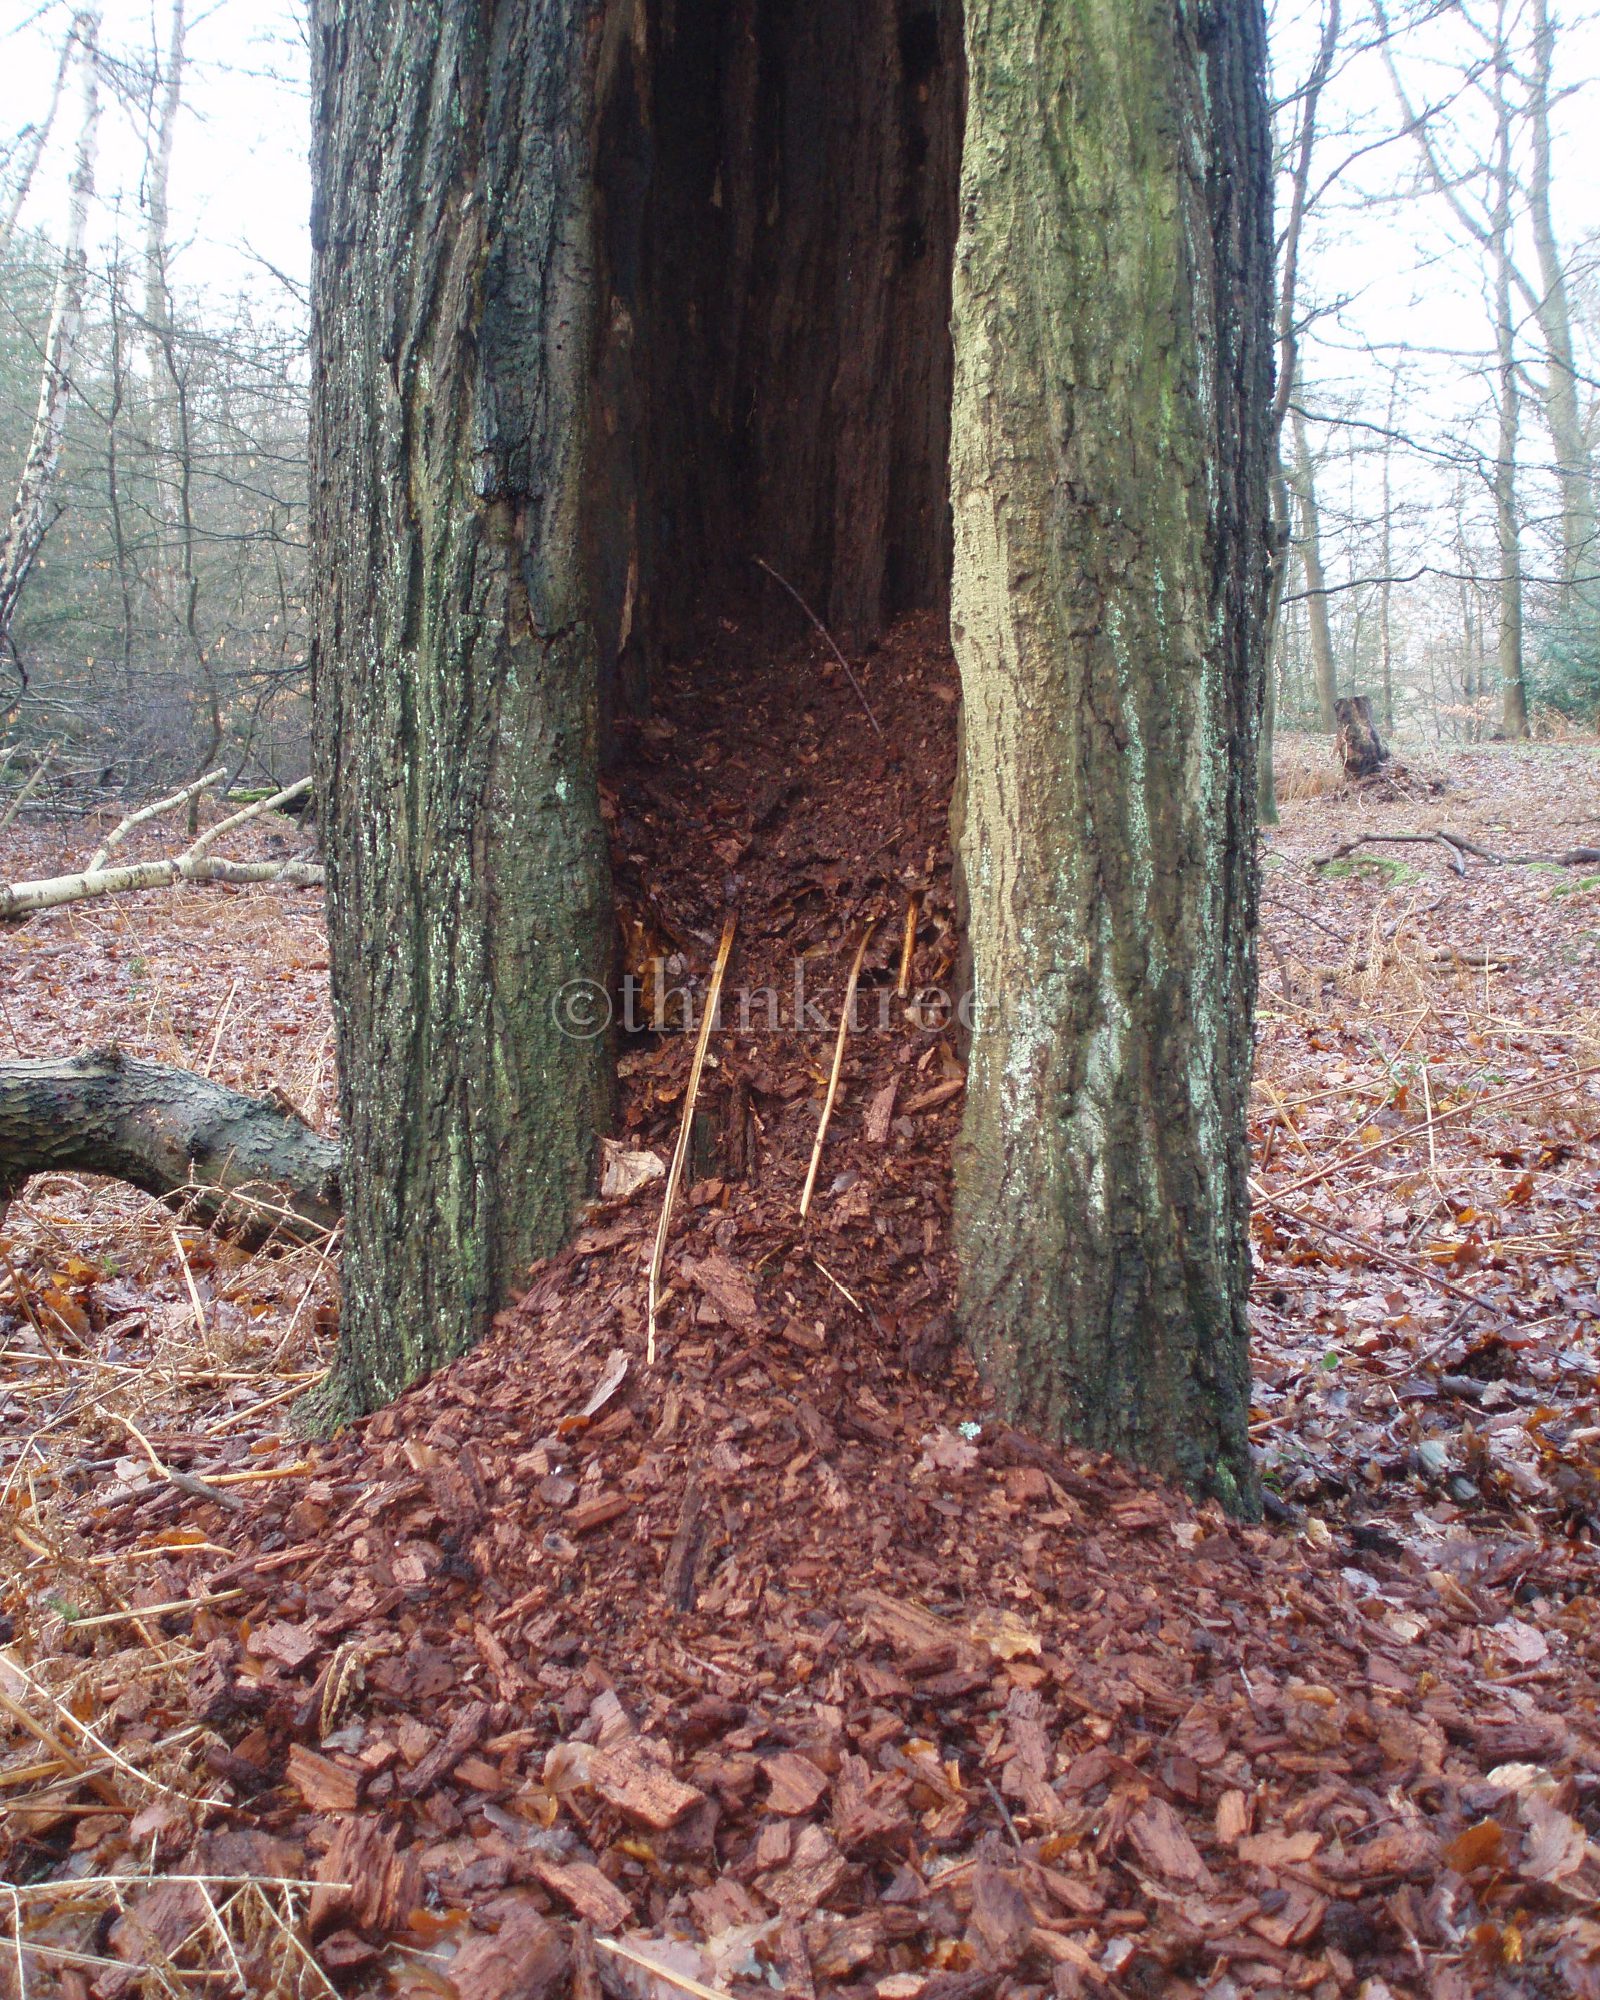 The hollow trunk of a veteran beech pollard at Burnham Beeches, Buckinghamshire